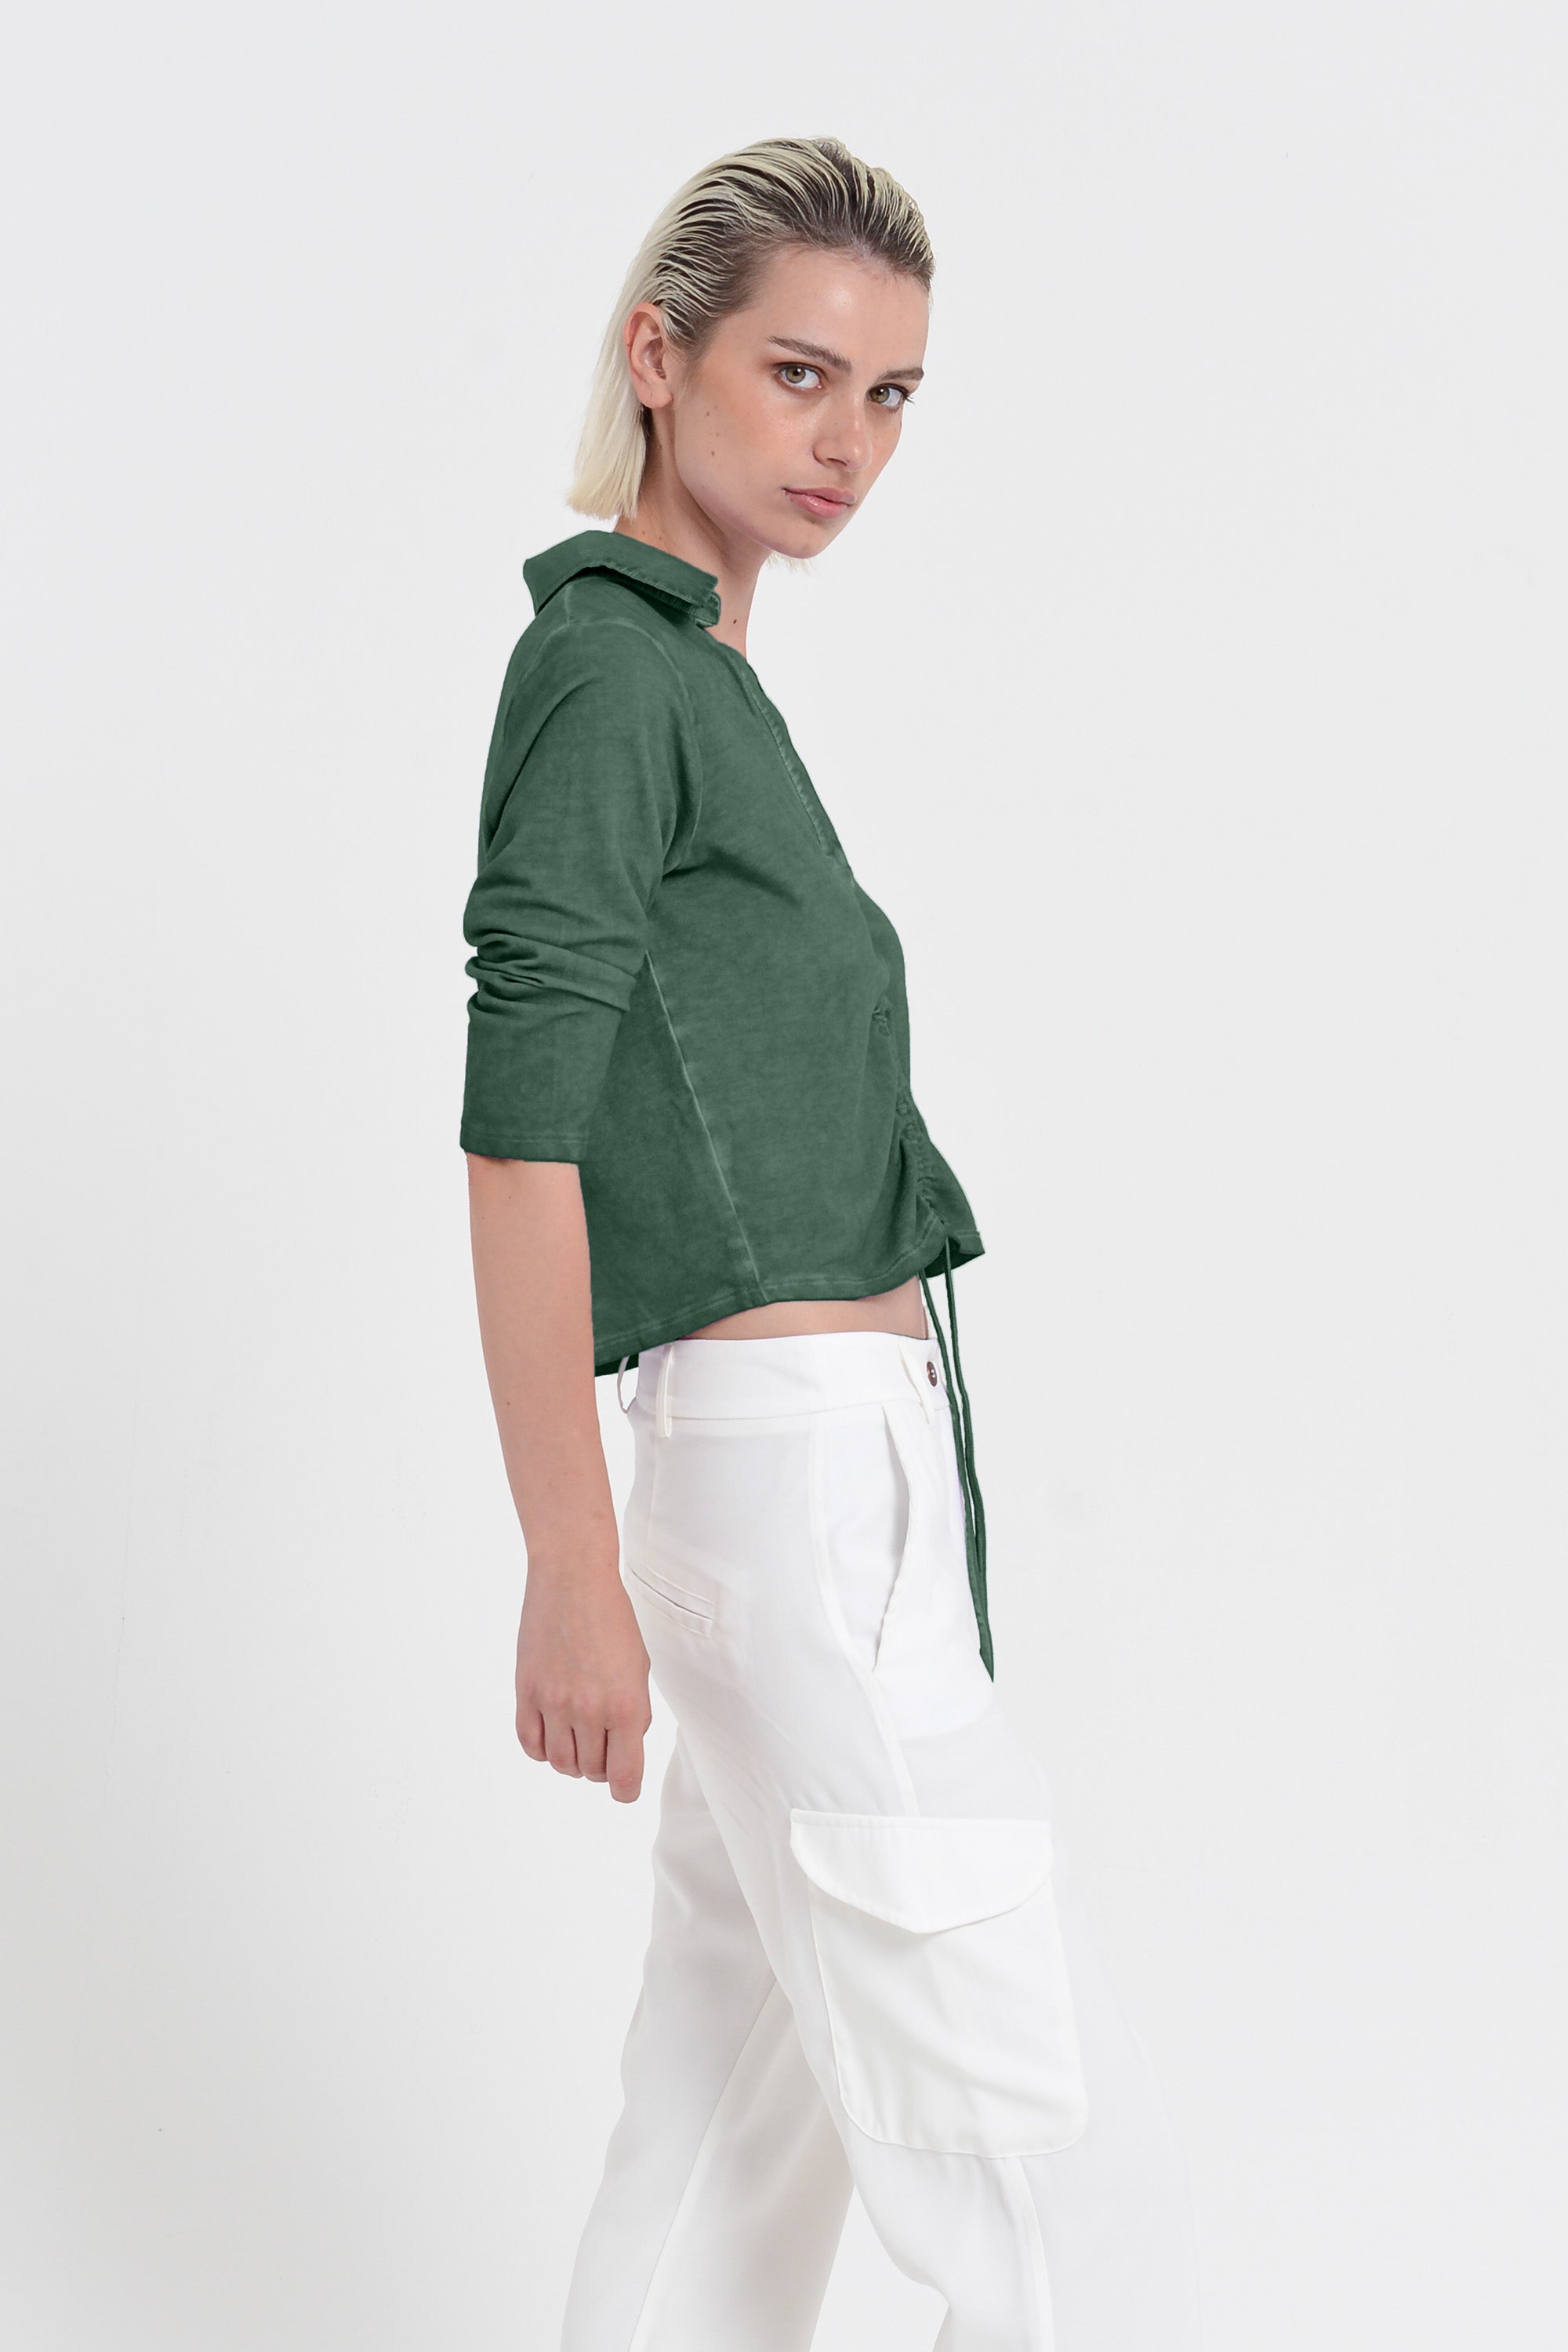 Menton Polo - Women's Short Sleeve Pique Polo Shirt - Juniper